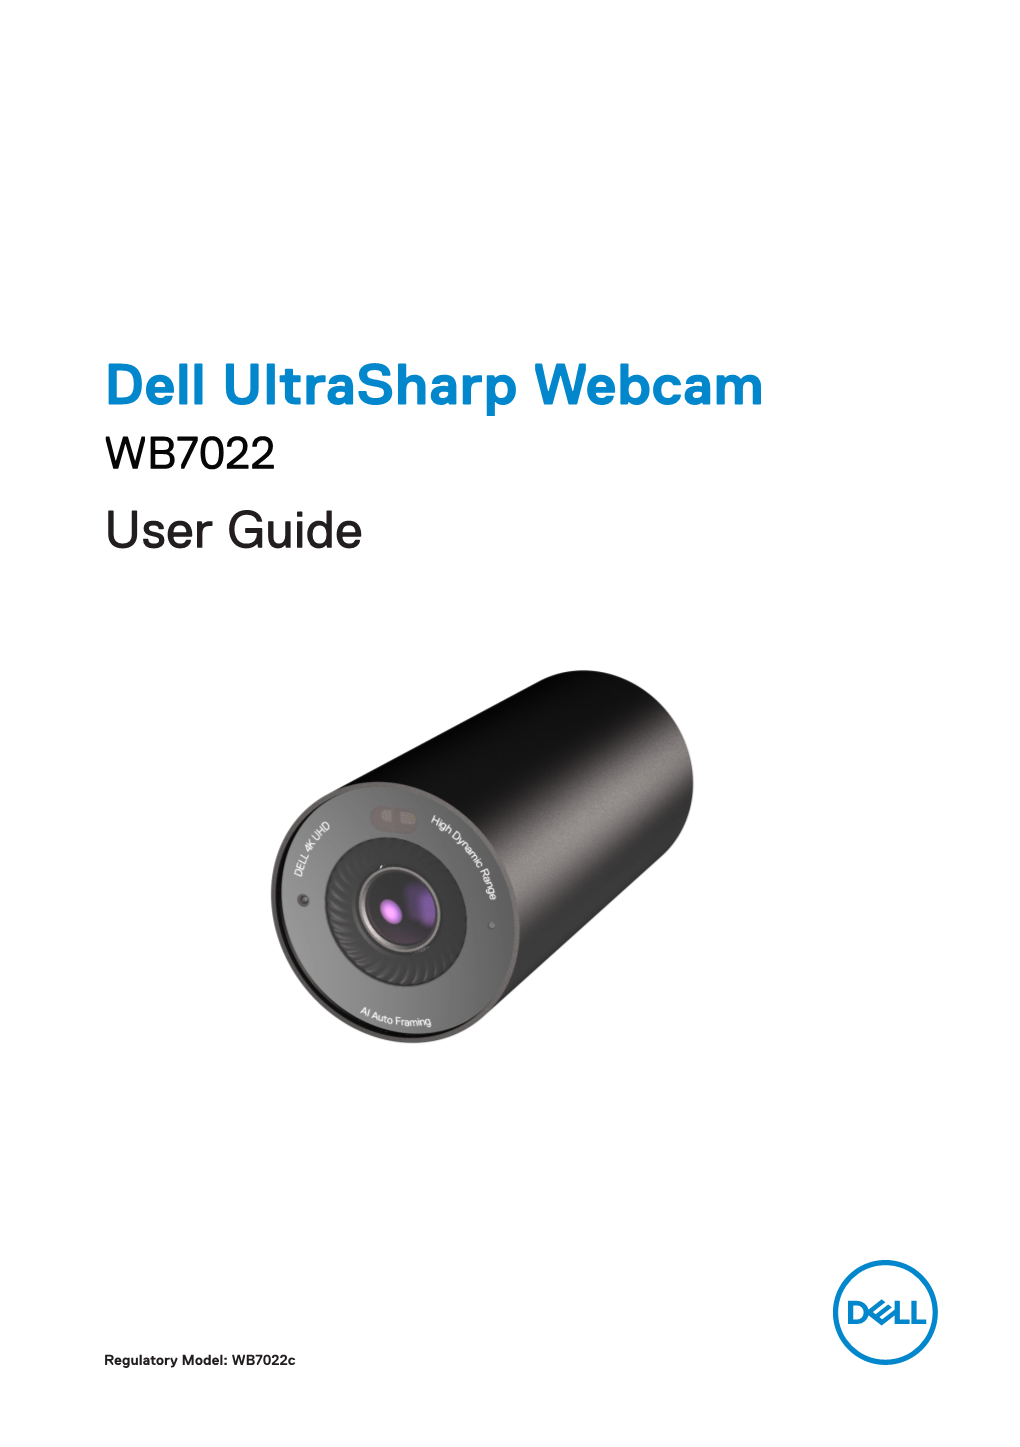 Dell Ultrasharp Webcam WB7022 User Guide